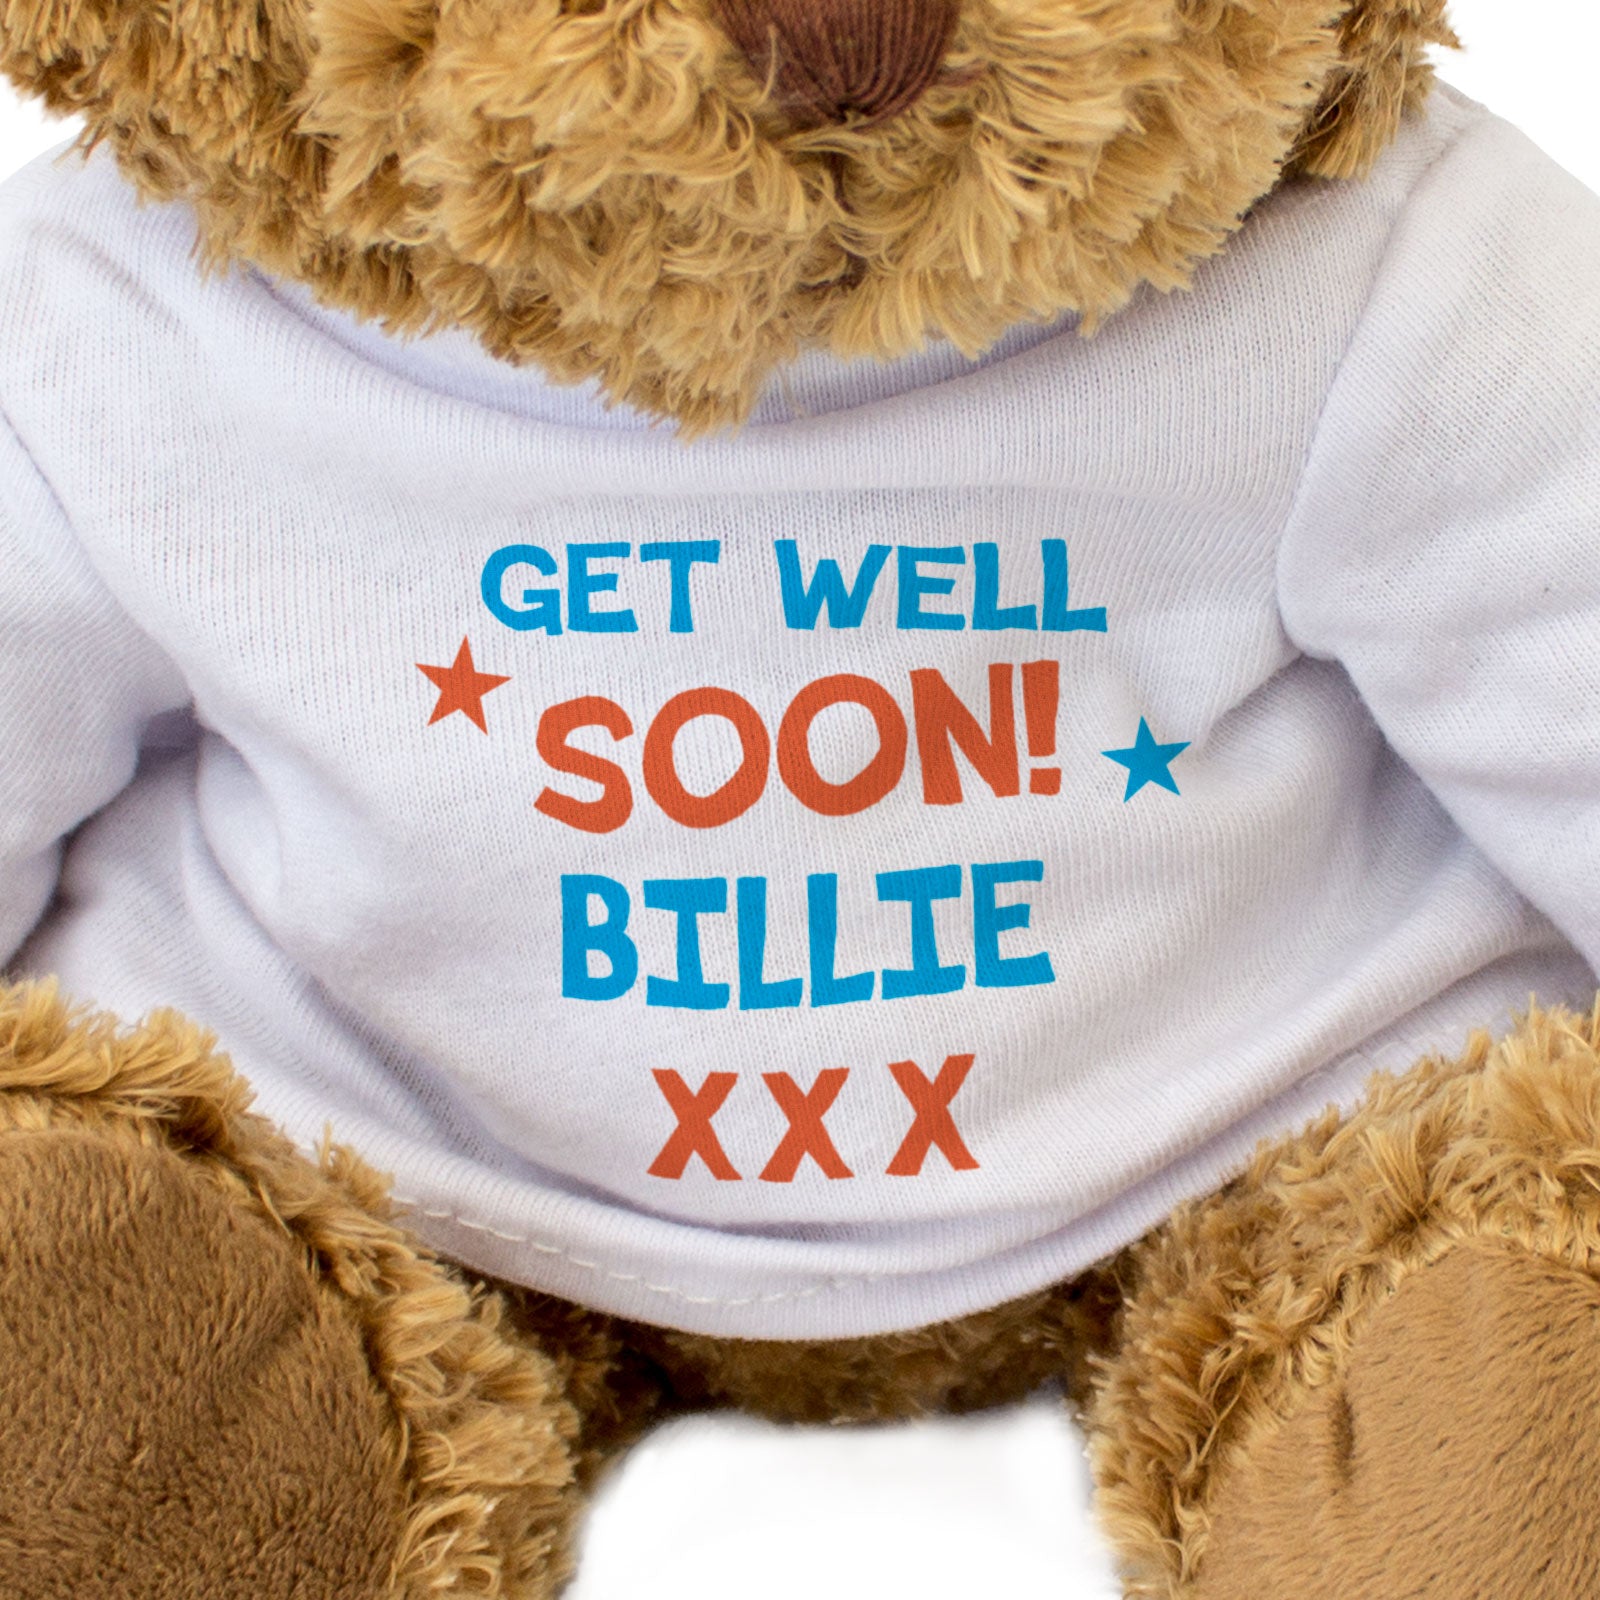 Get Well Soon Billie - Teddy Bear